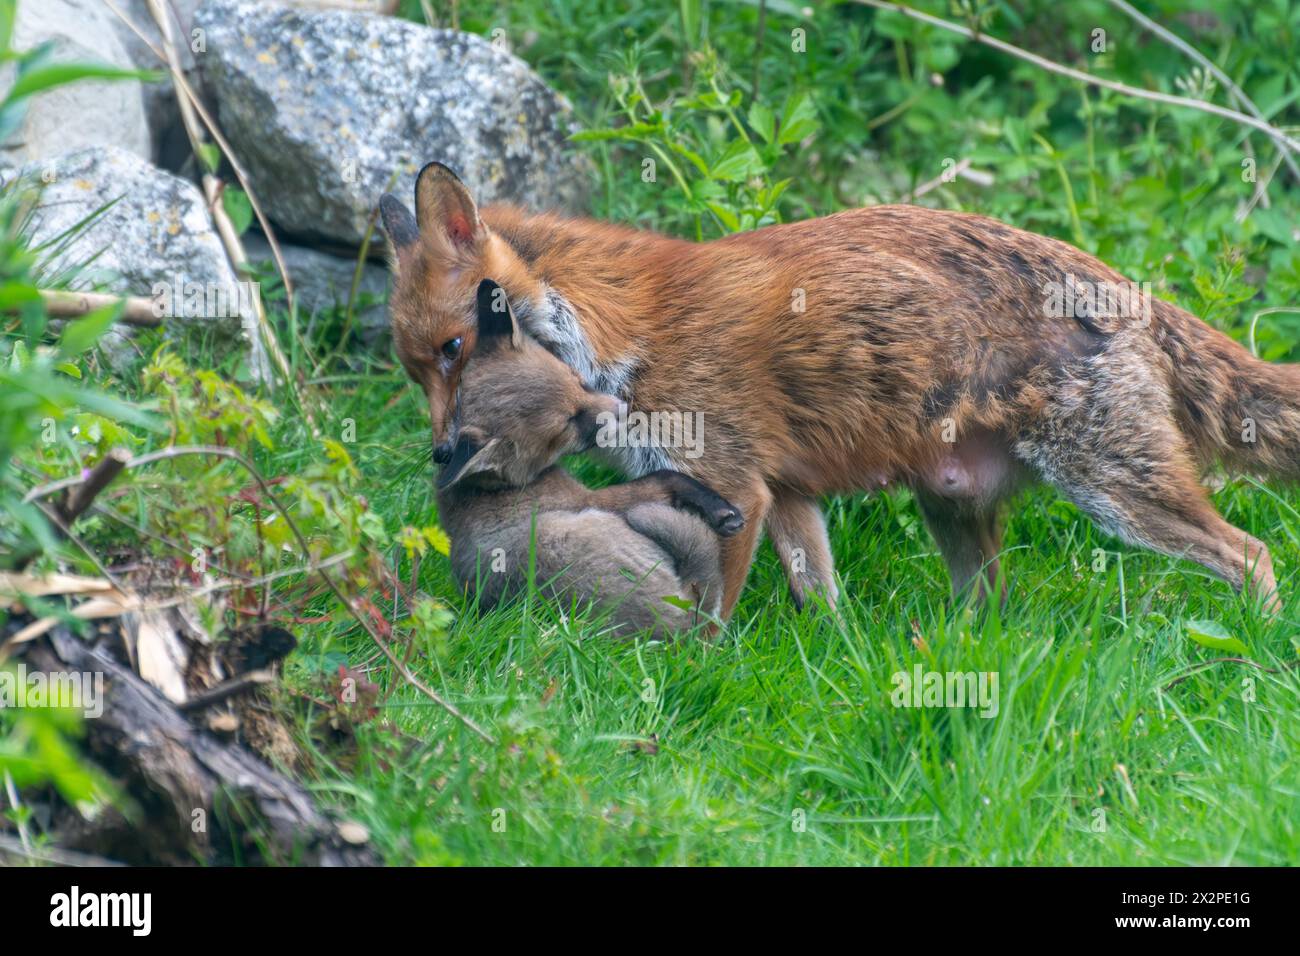 Fox vixen Vulpes vulpes déplaçant un petit en le portant dans sa bouche par le gommage du cou, jardin de la faune, Angleterre, Royaume-Uni Banque D'Images